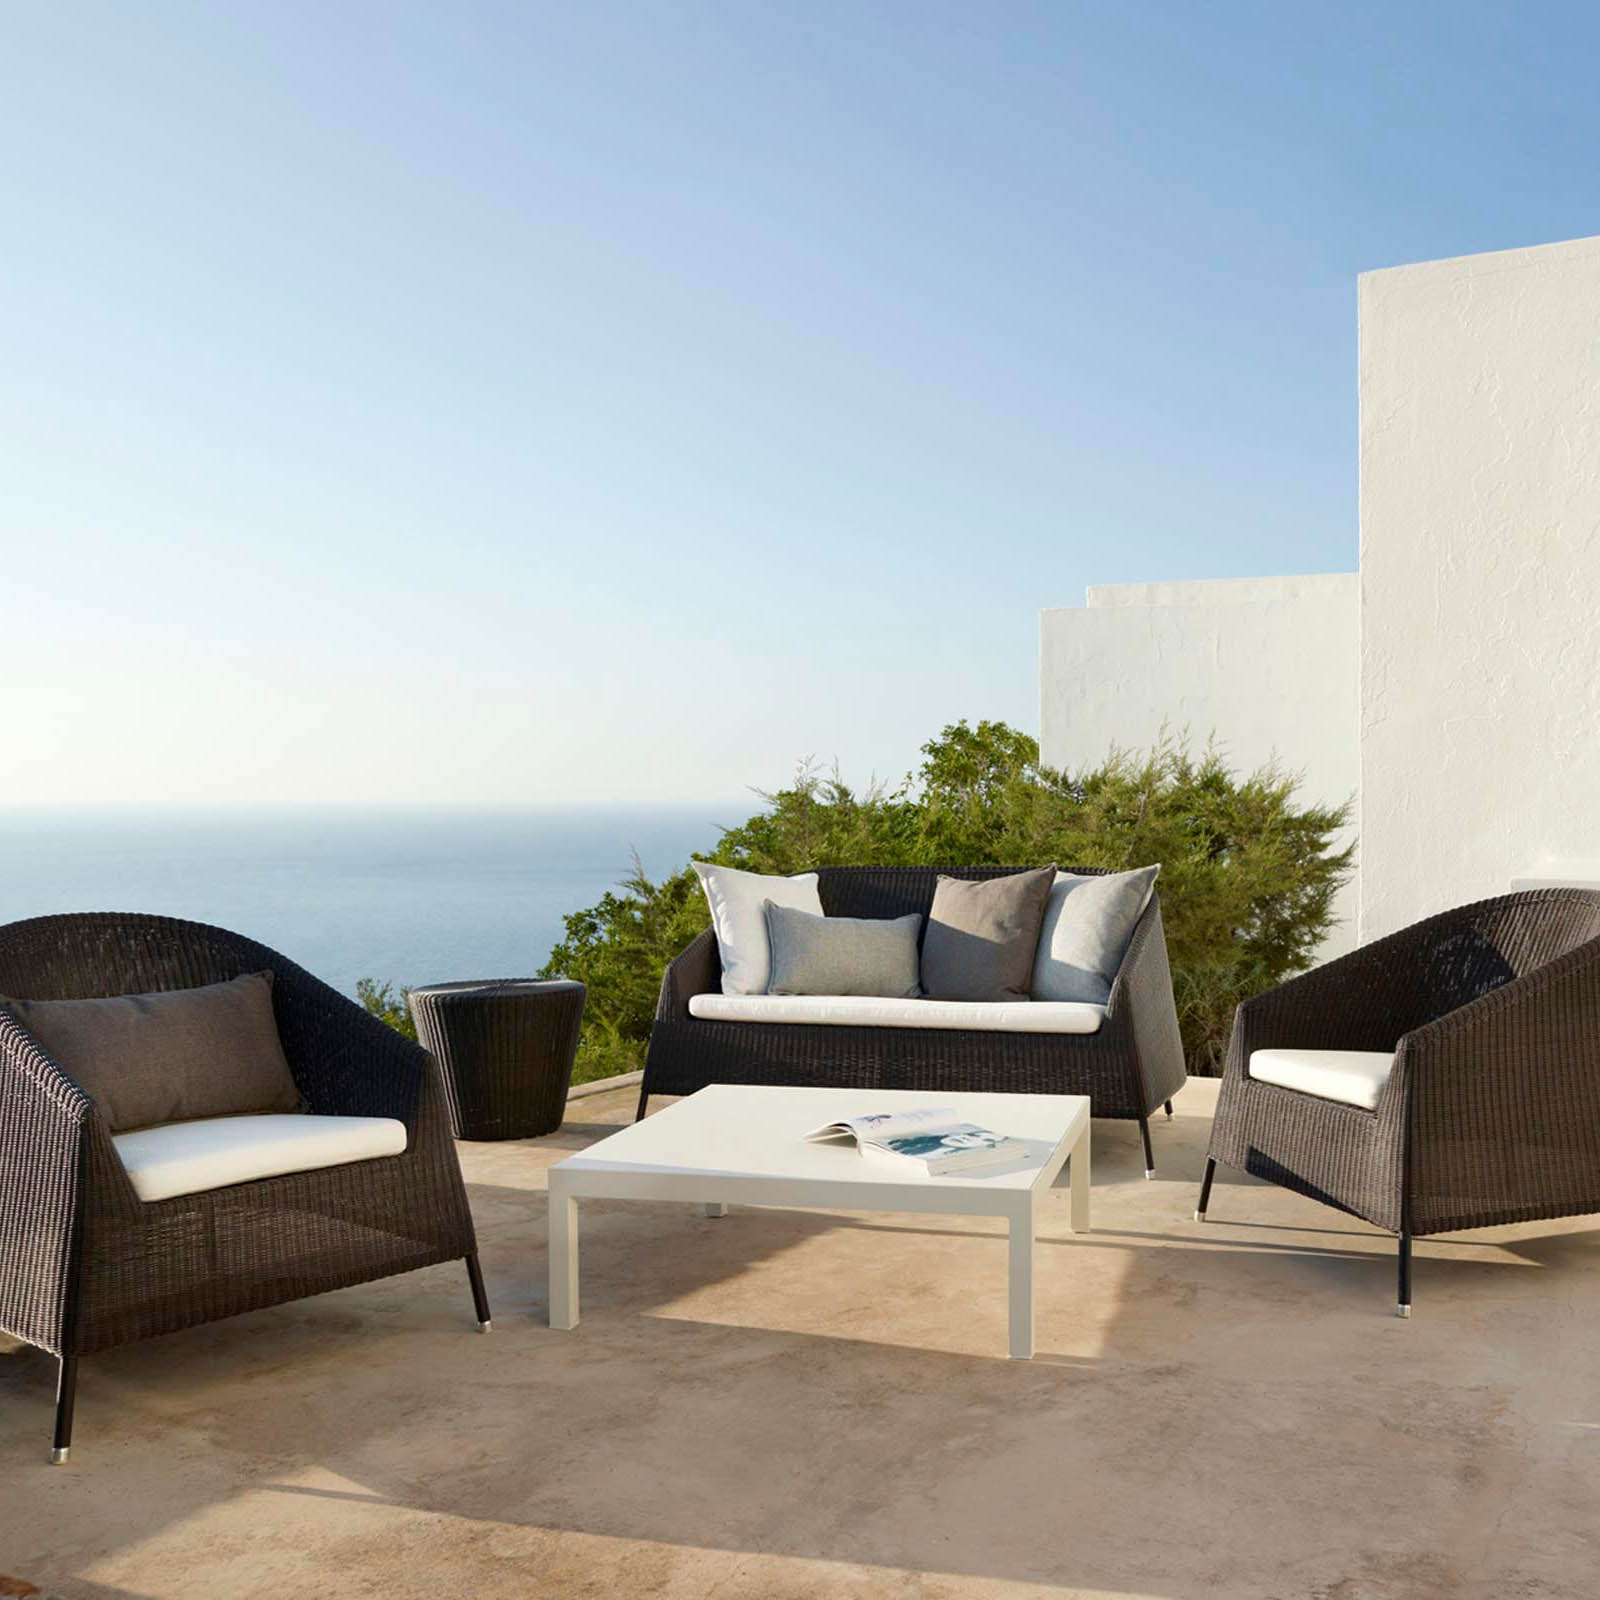 Kingston 2-Sitzer Sofa aus Cane-line Weave in White Grey mit Kissen aus Cane-line Natté in Light Grey